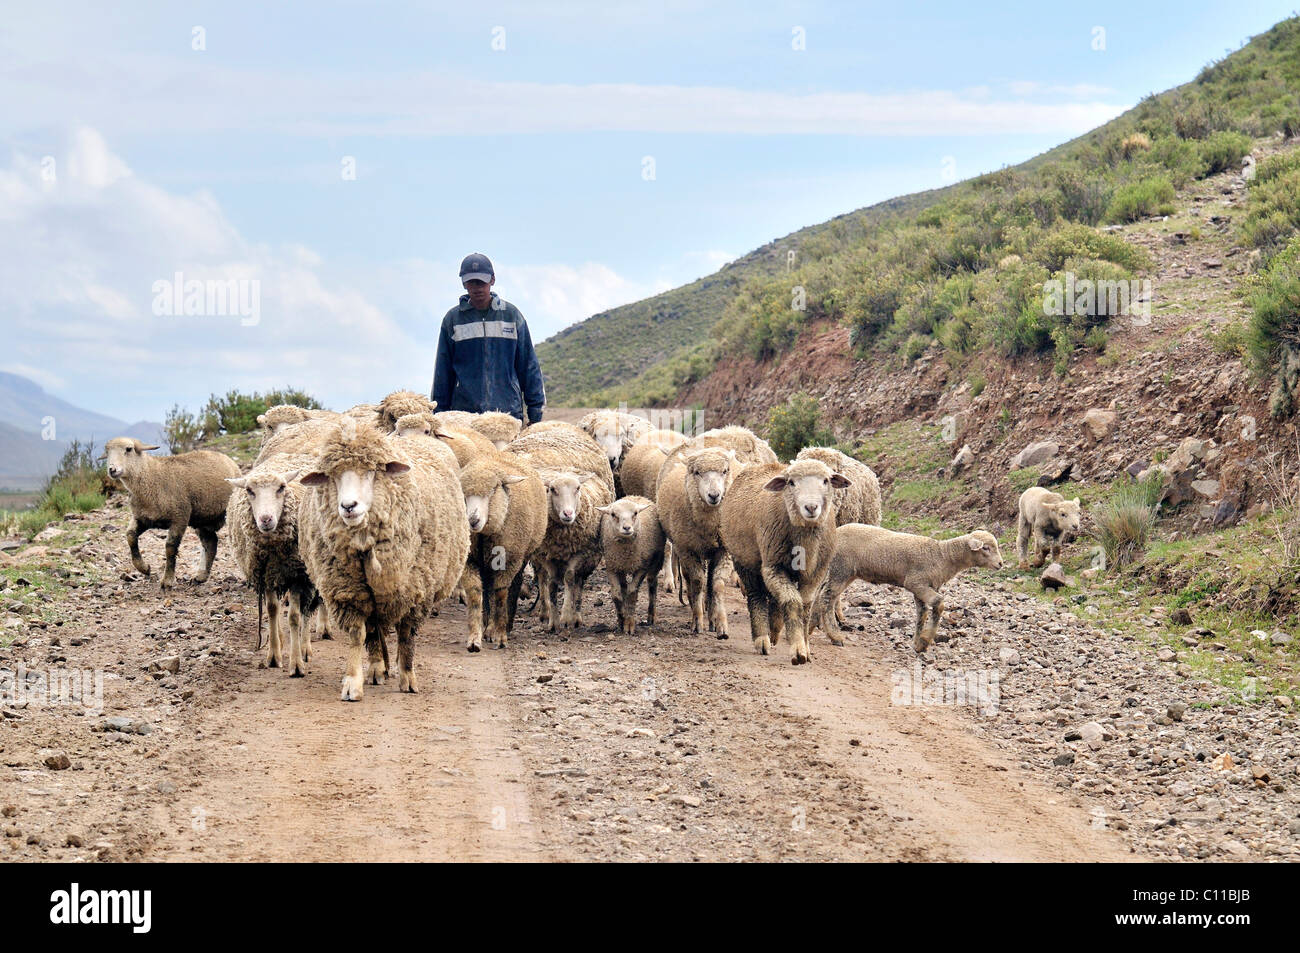 La cría de ovejas, el pastor con el rebaño, Altiplano altiplano boliviano, el departamento de Oruro, Bolivia, América del Sur Foto de stock